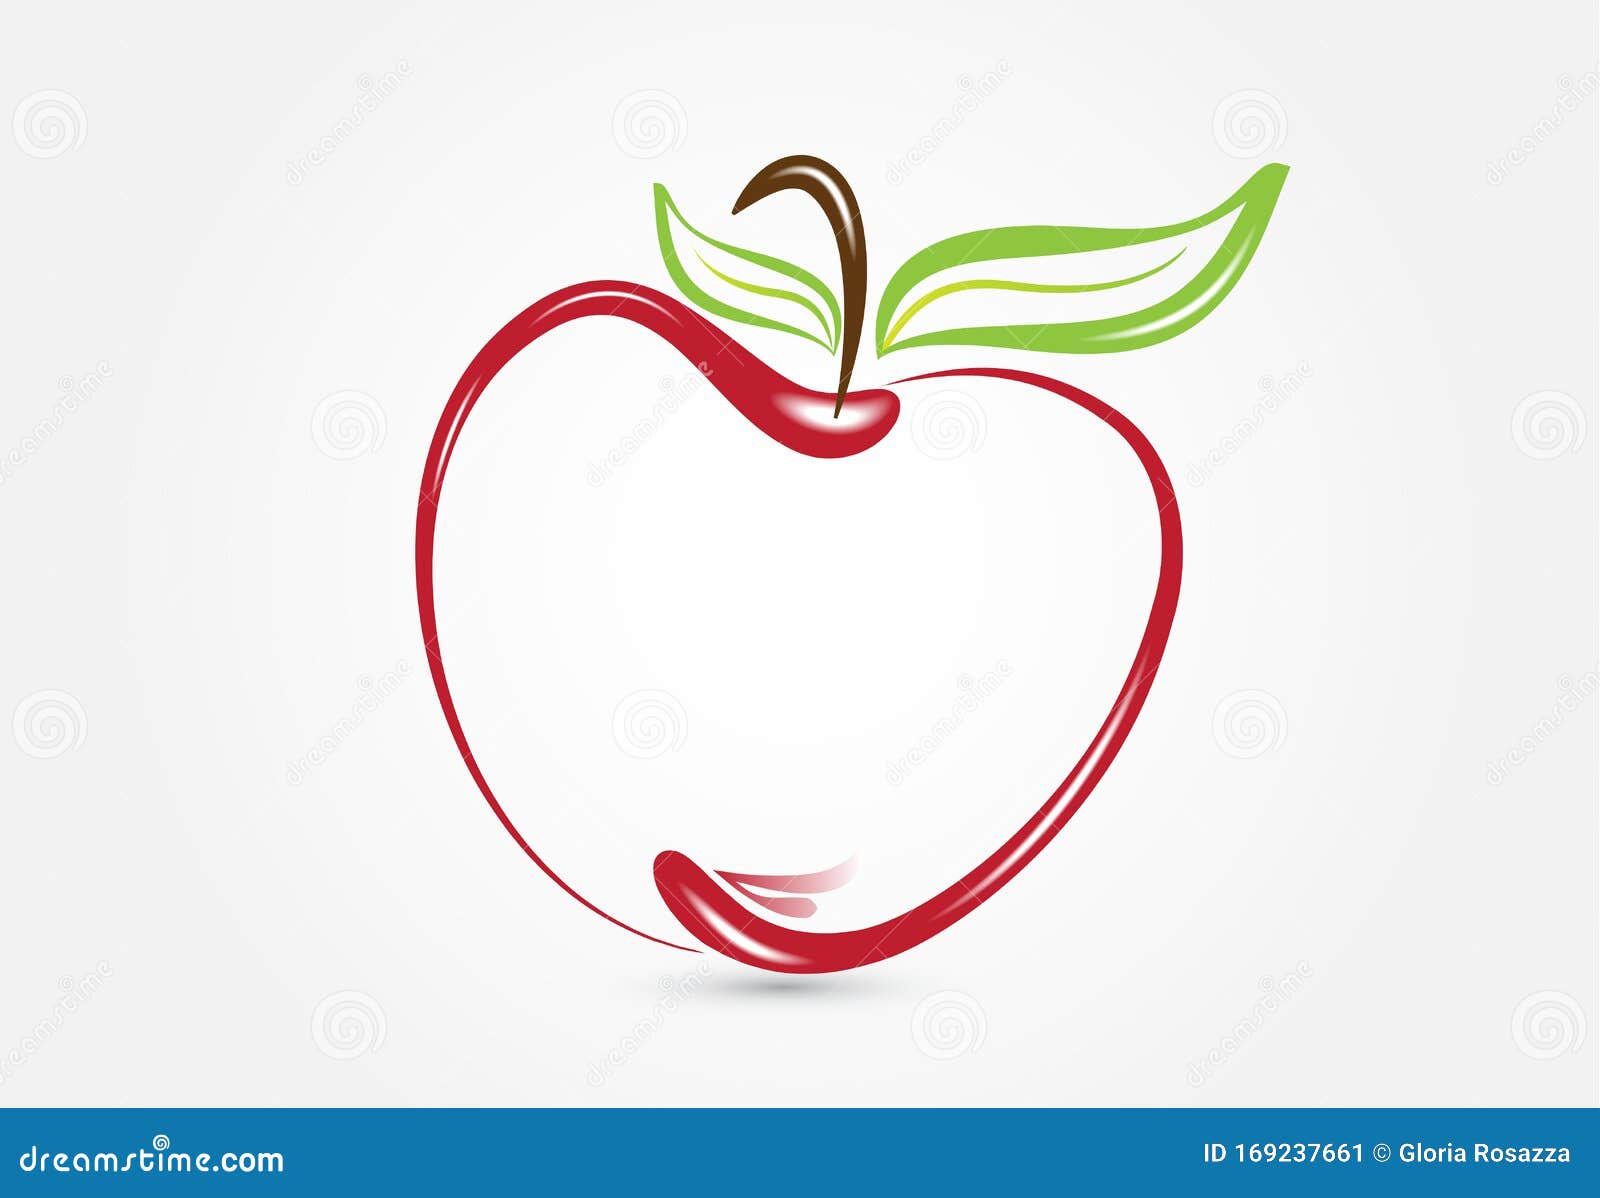 3500 Apple Logo Drawing Illustrations RoyaltyFree Vector Graphics   Clip Art  iStock